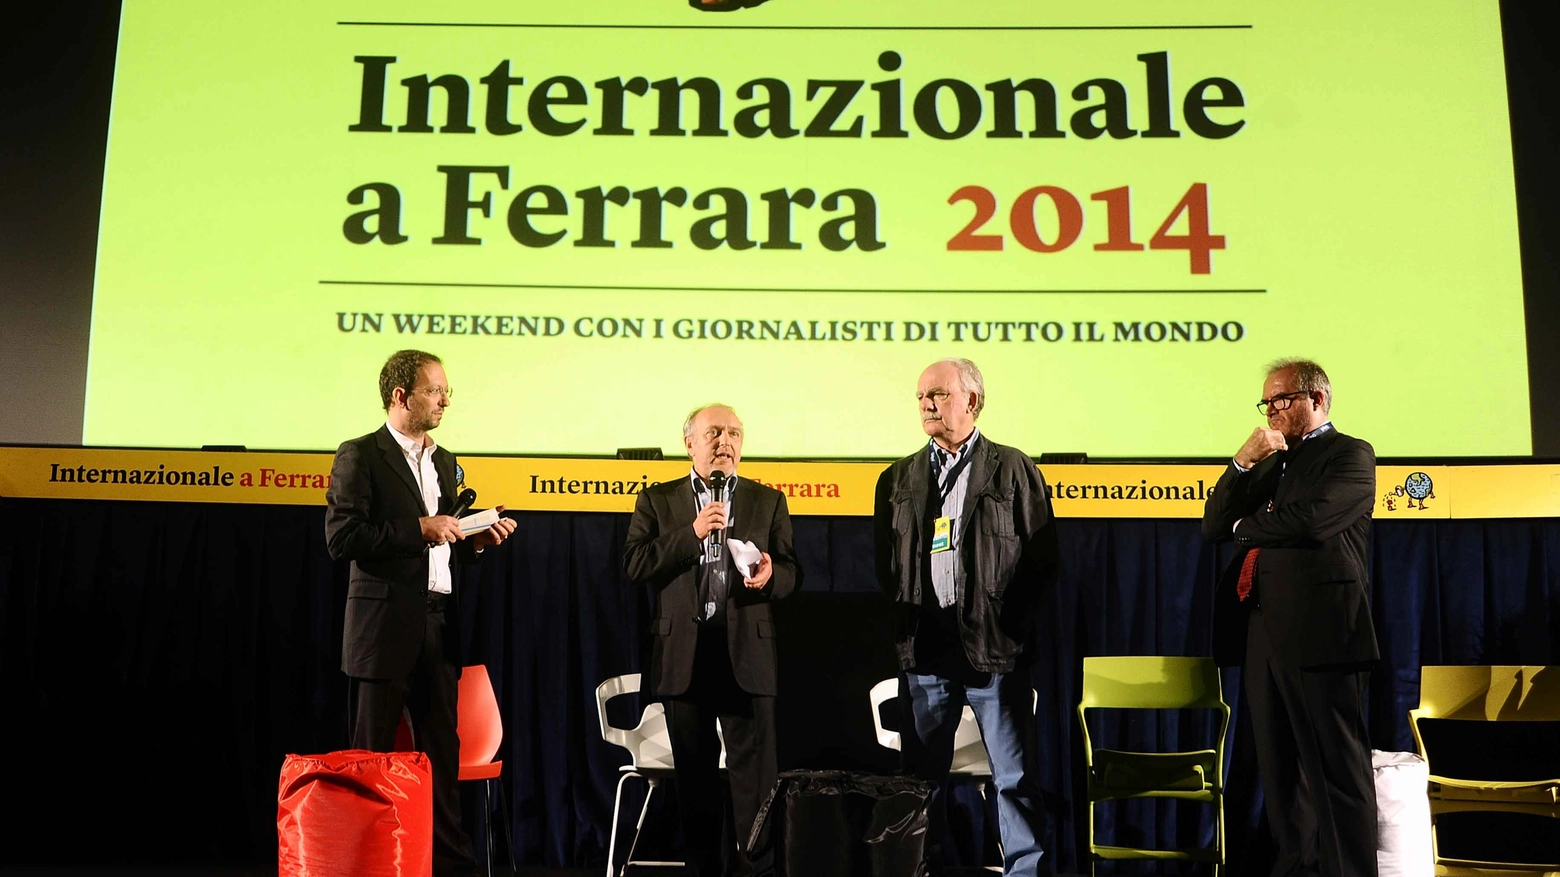 Internazionale a Ferrara 2014